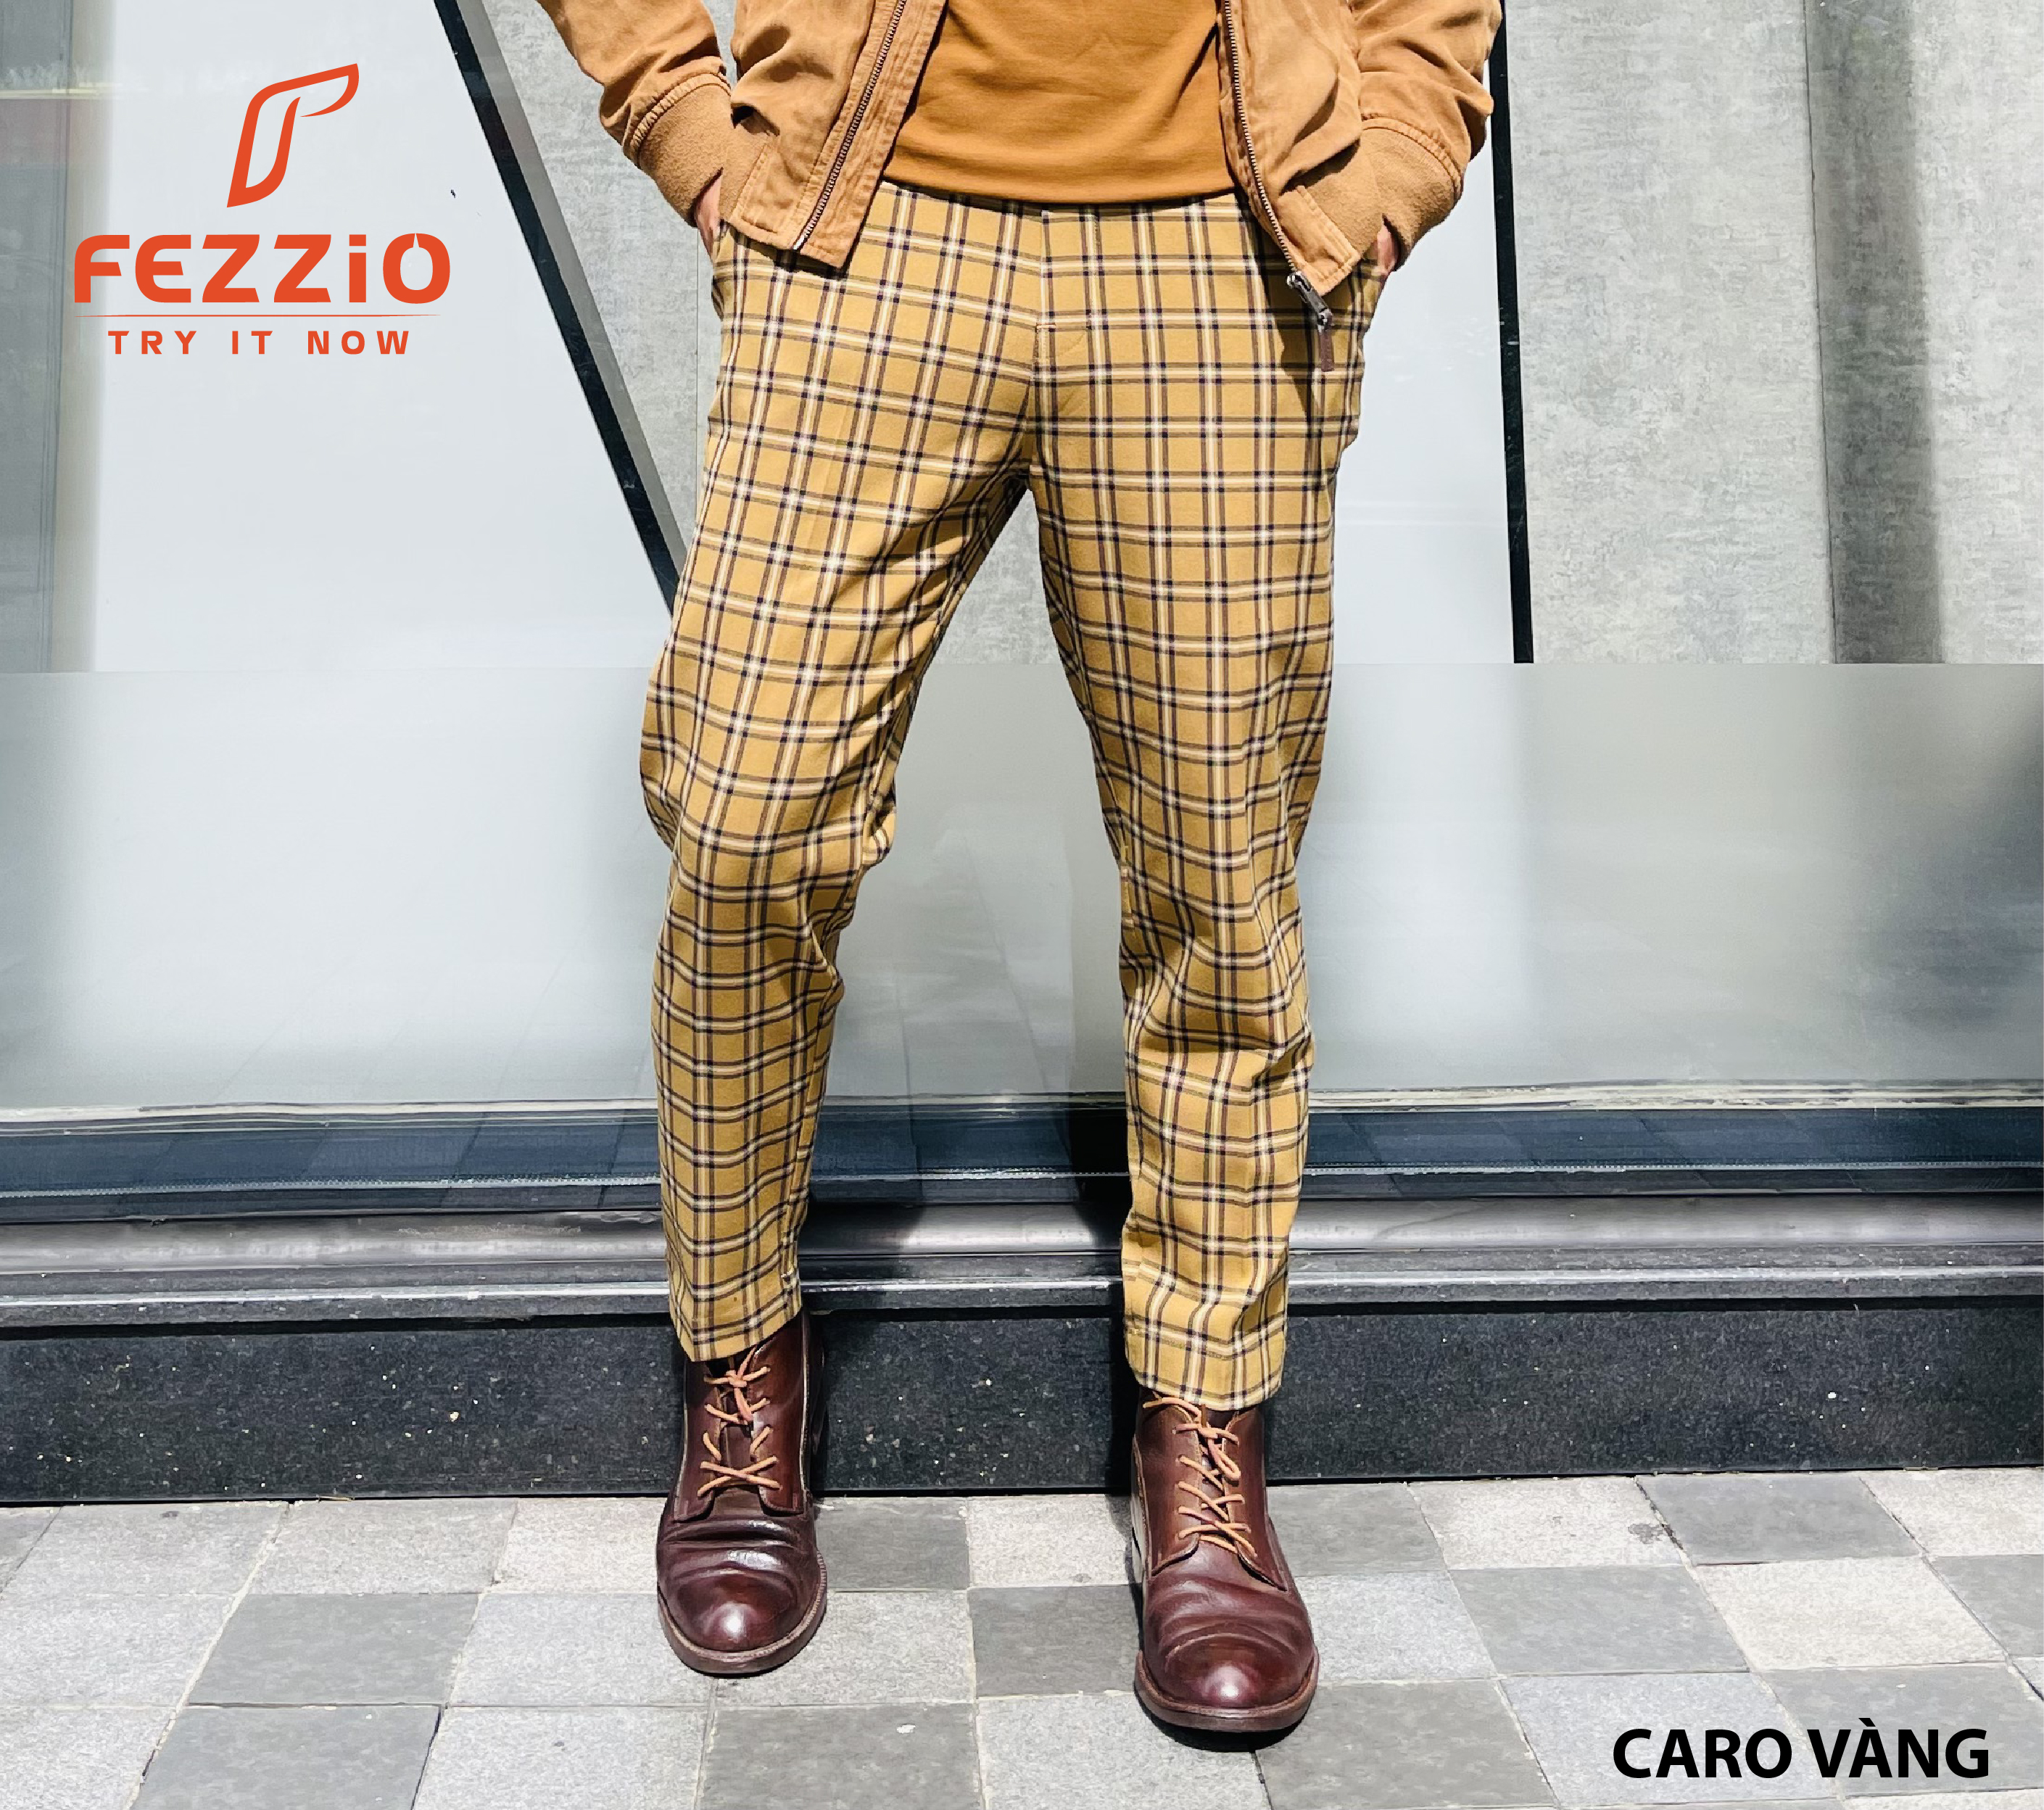 Quần kaki nam ống côn kiểu dáng trẻ trung chất liệu co giãn thương hiệu Fezzio